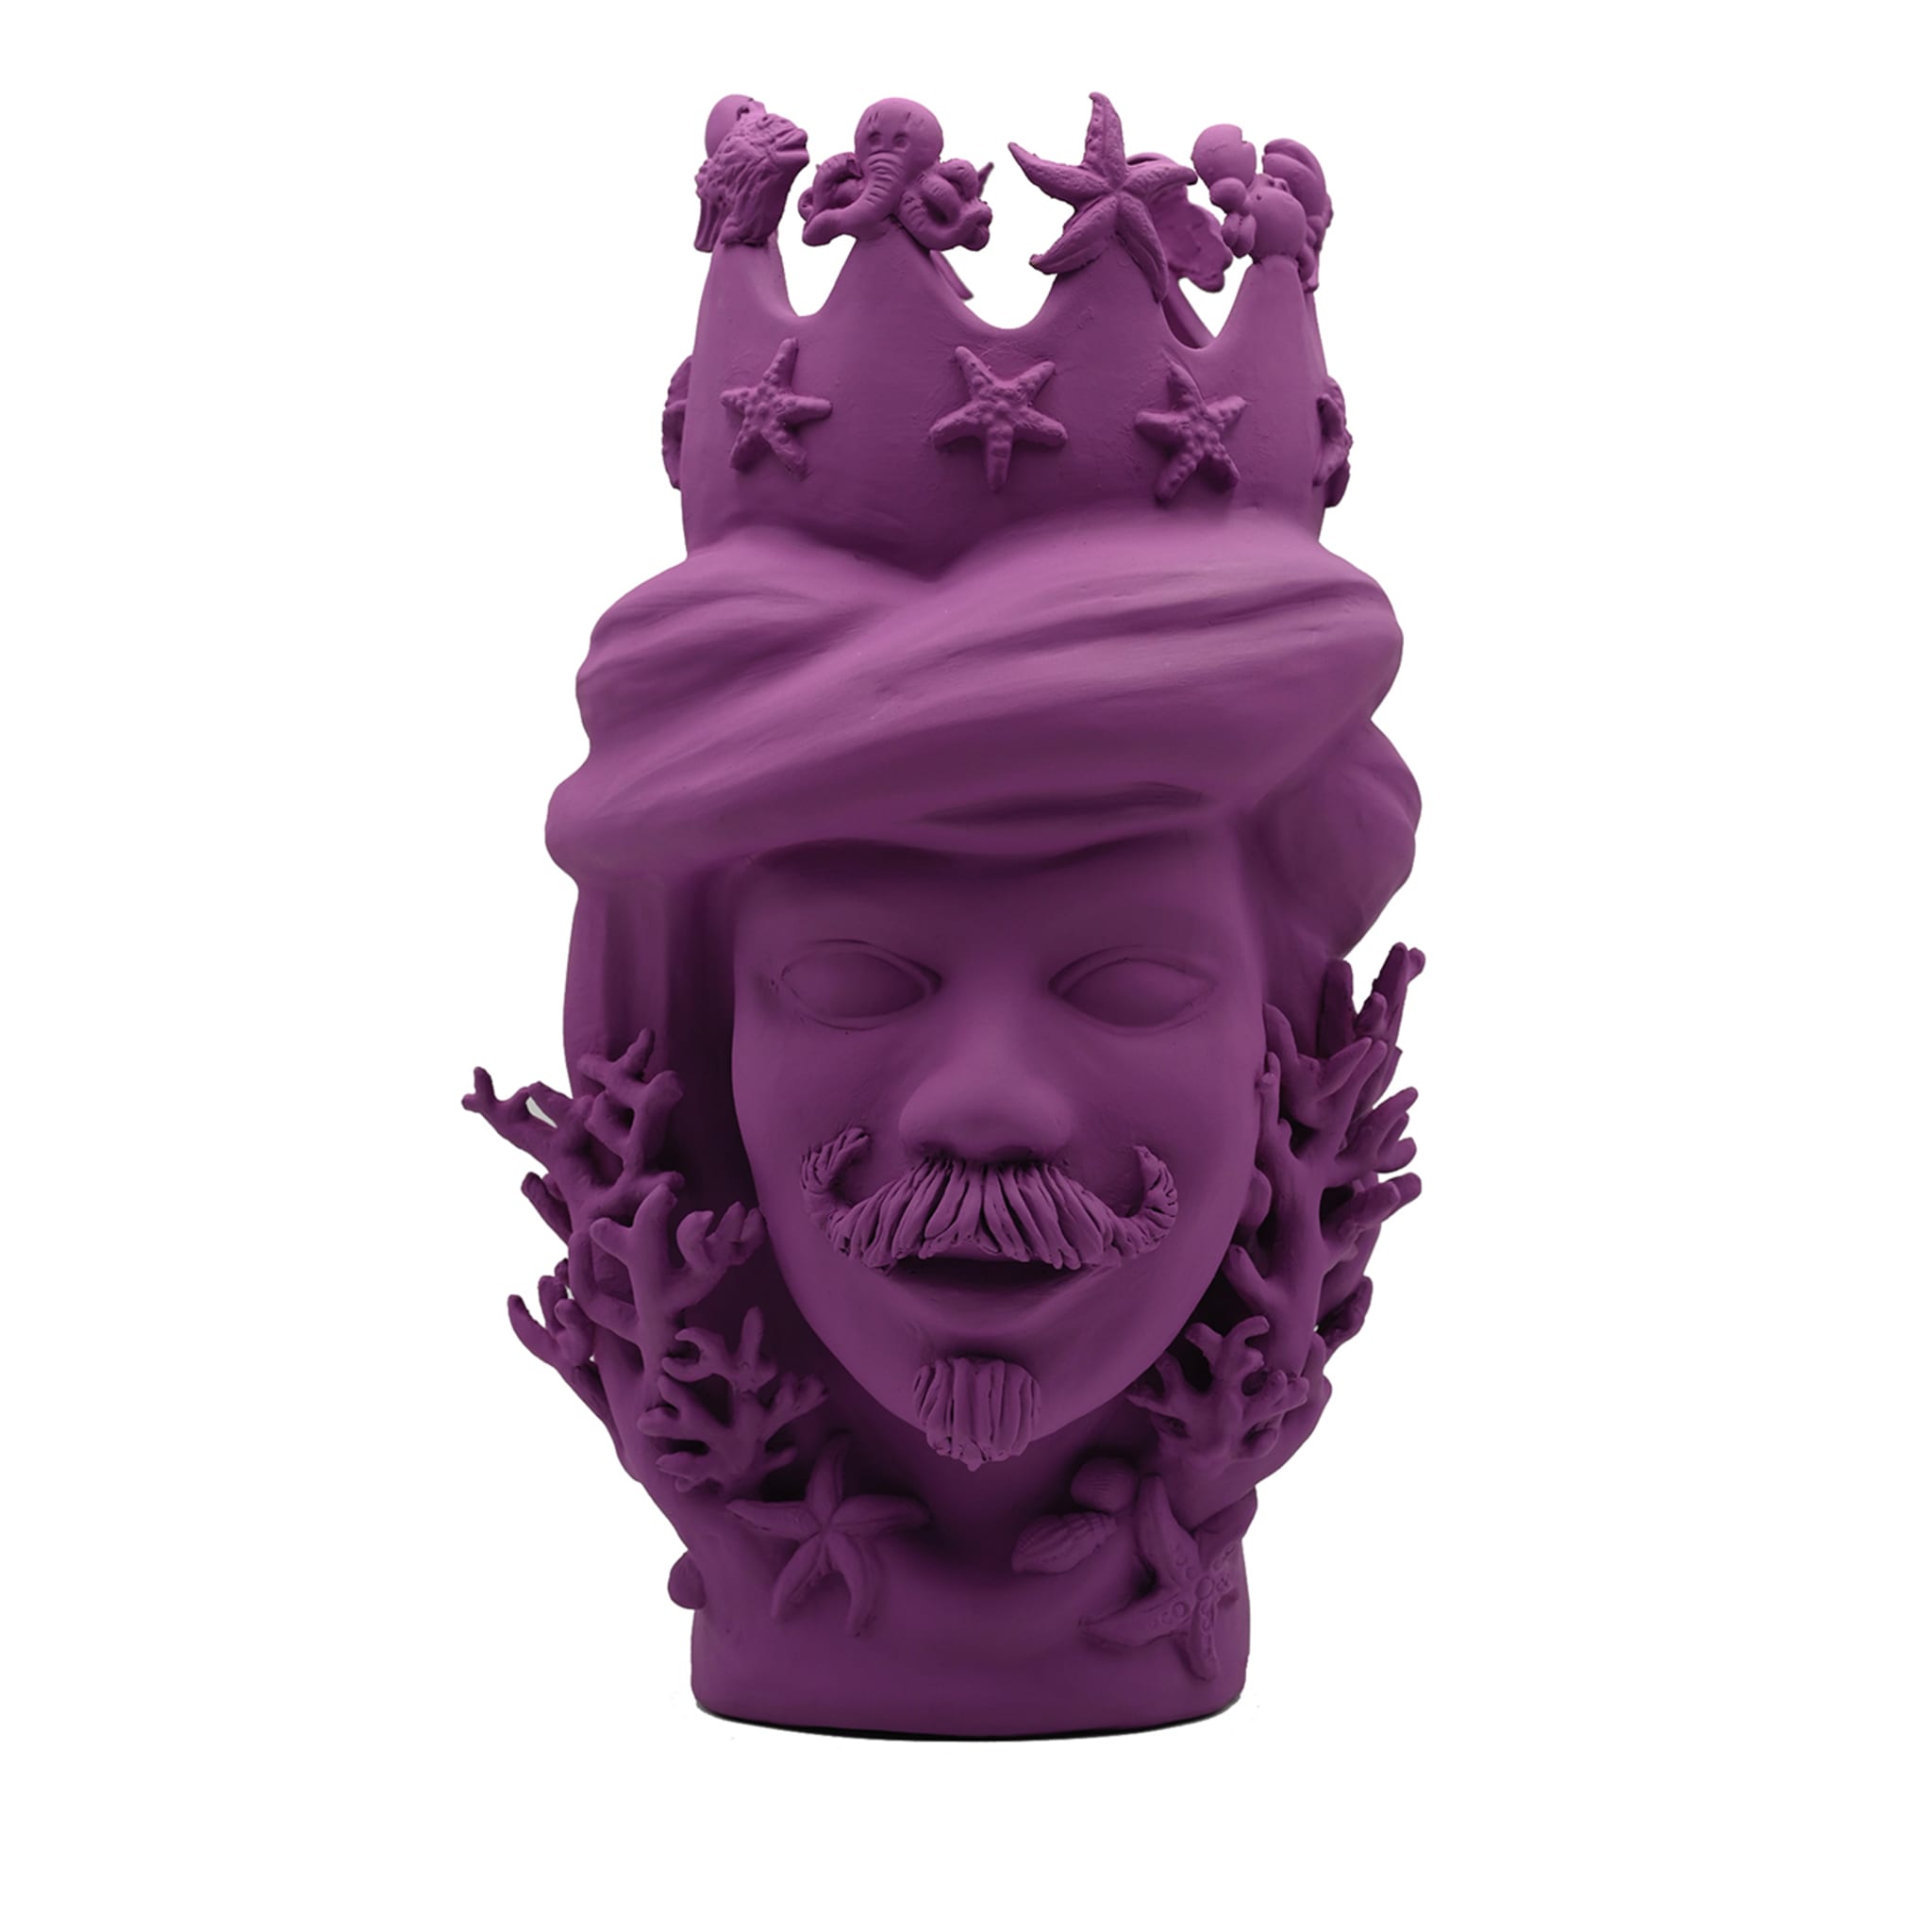 Moor's Head Purple Sculpture